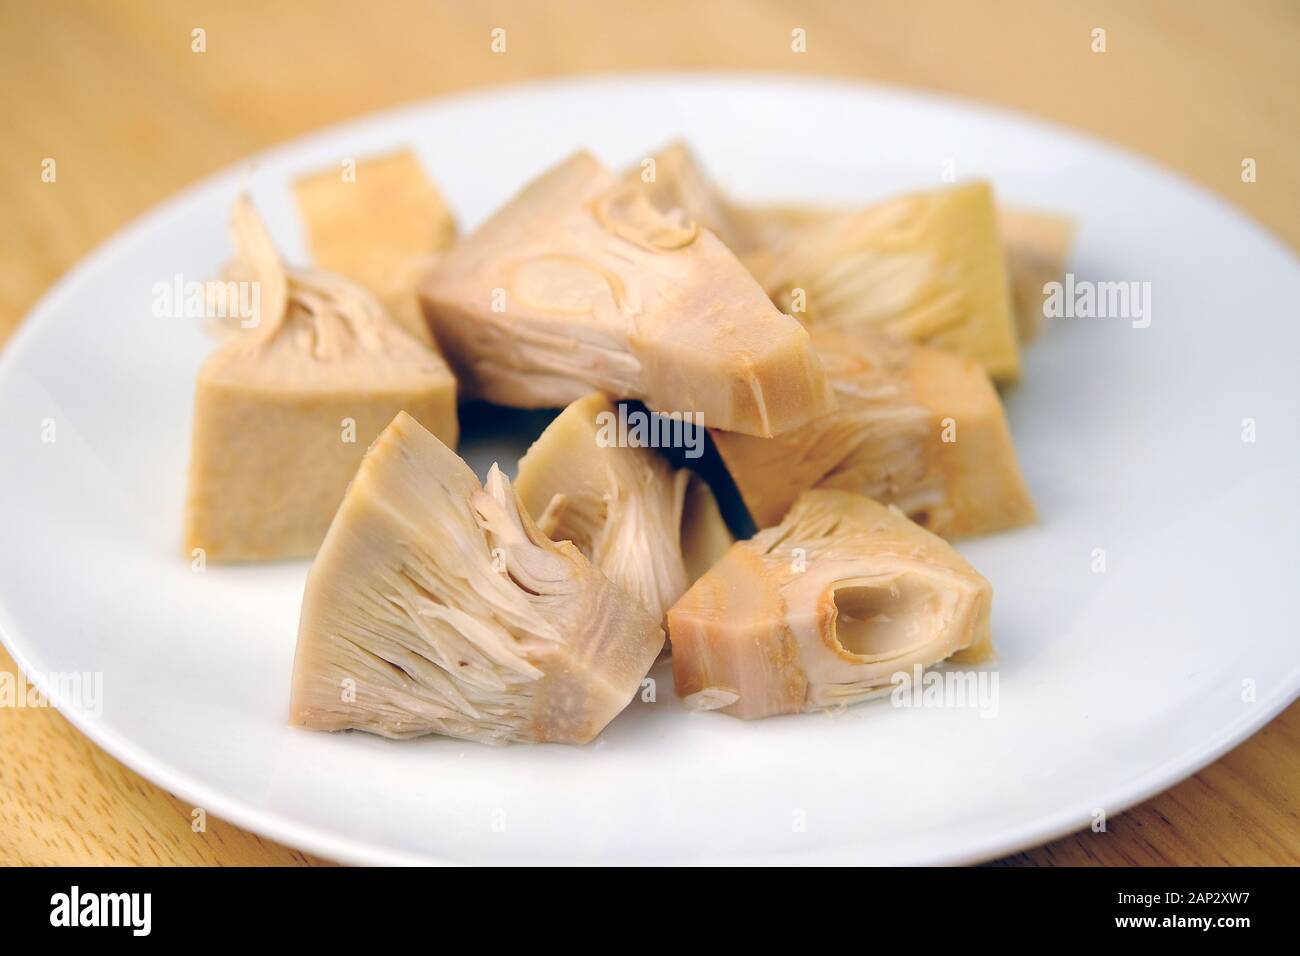 Conserve Jackfruit giovani pezzi di gara sul piatto. Una sana sostituzione di carne vegana ed è una delle tendenze alimentari a causa della sua carne come la tessitura. Foto Stock